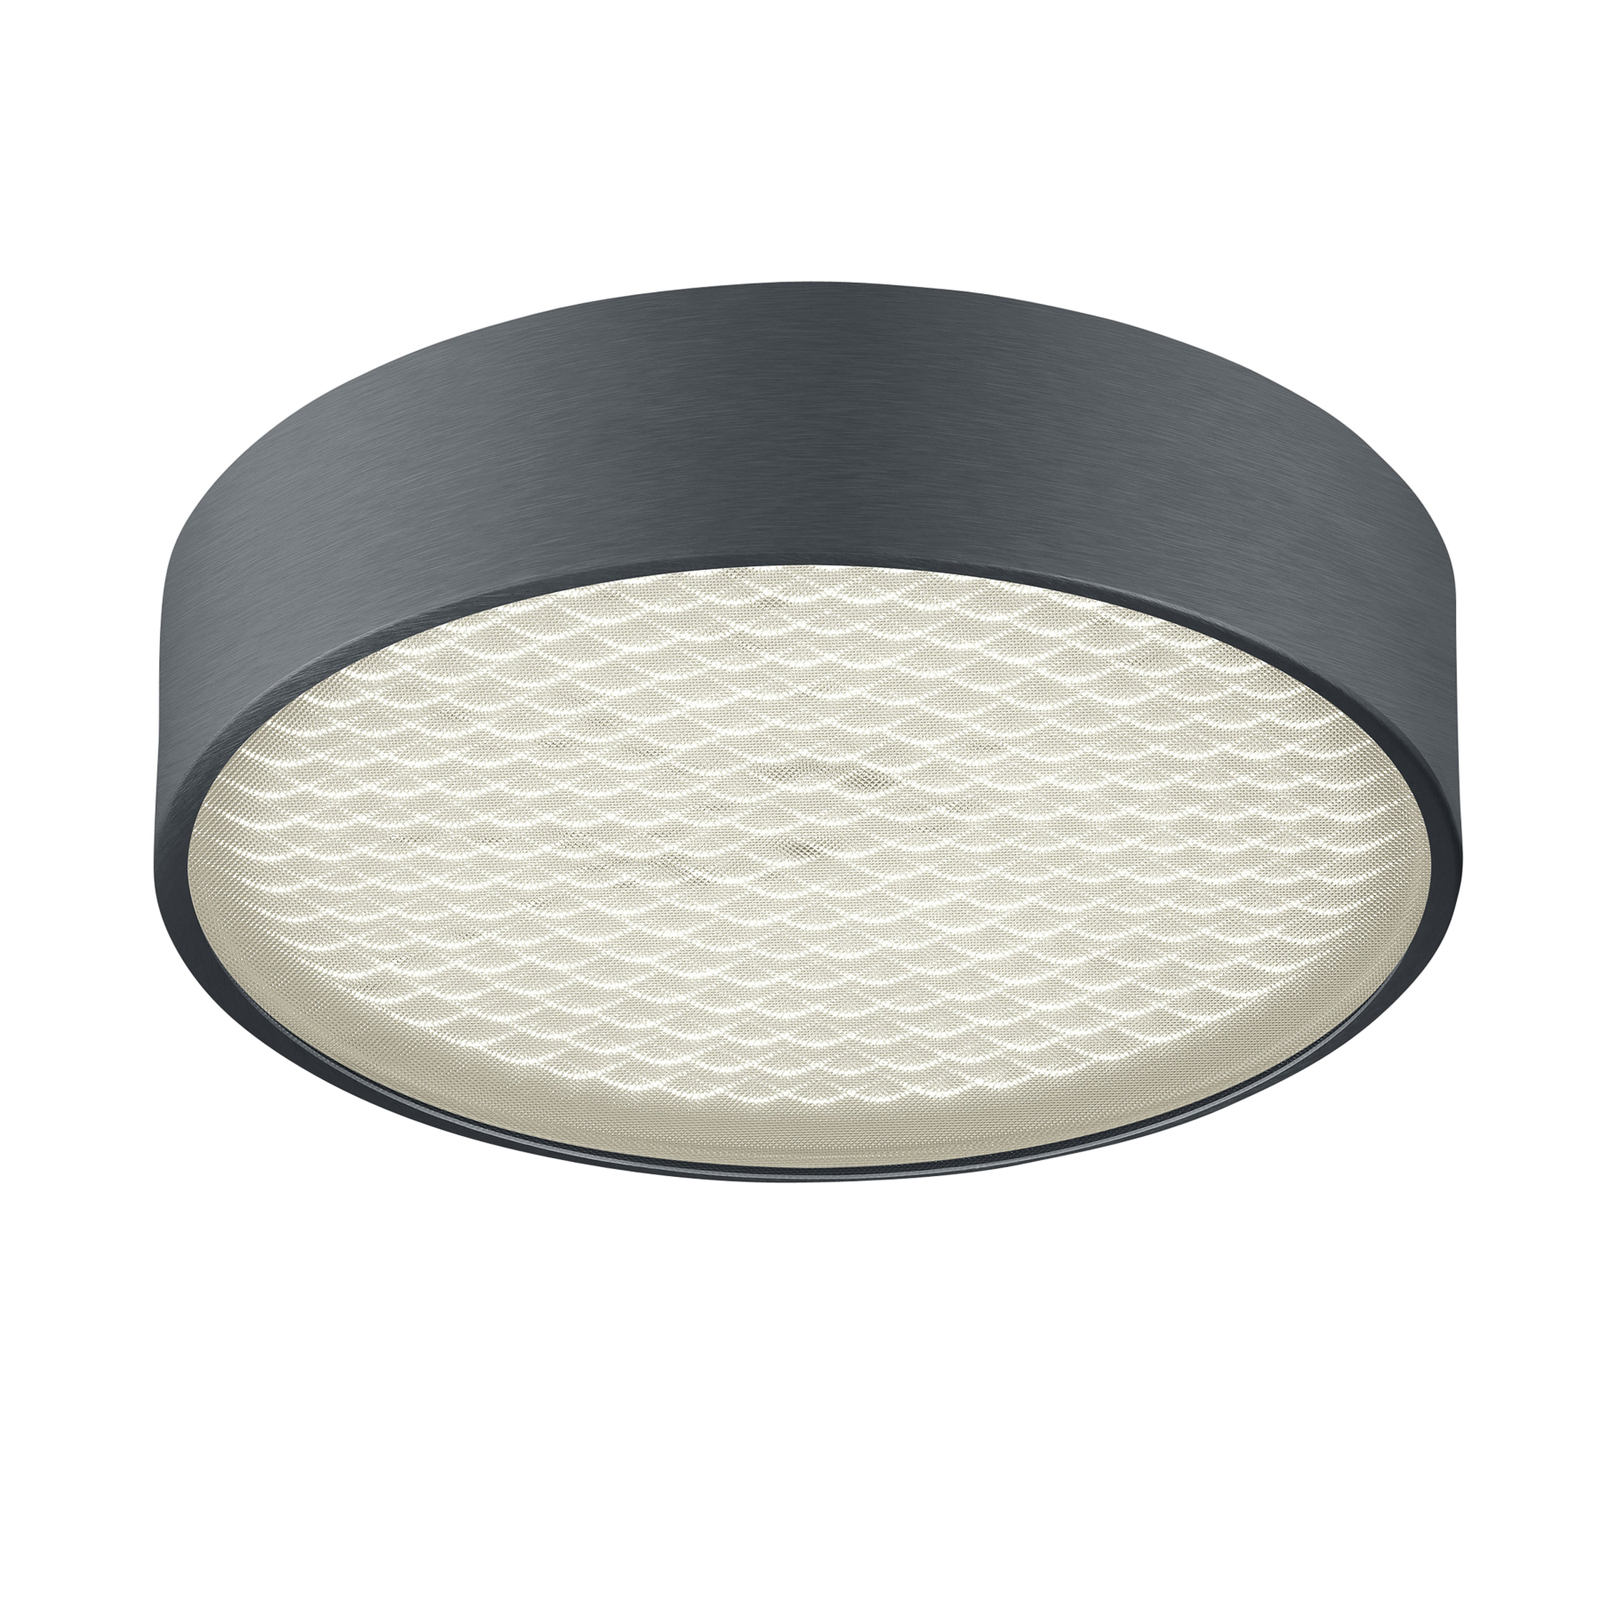 BANKAMP Drum LED ceiling light, matt anthracite